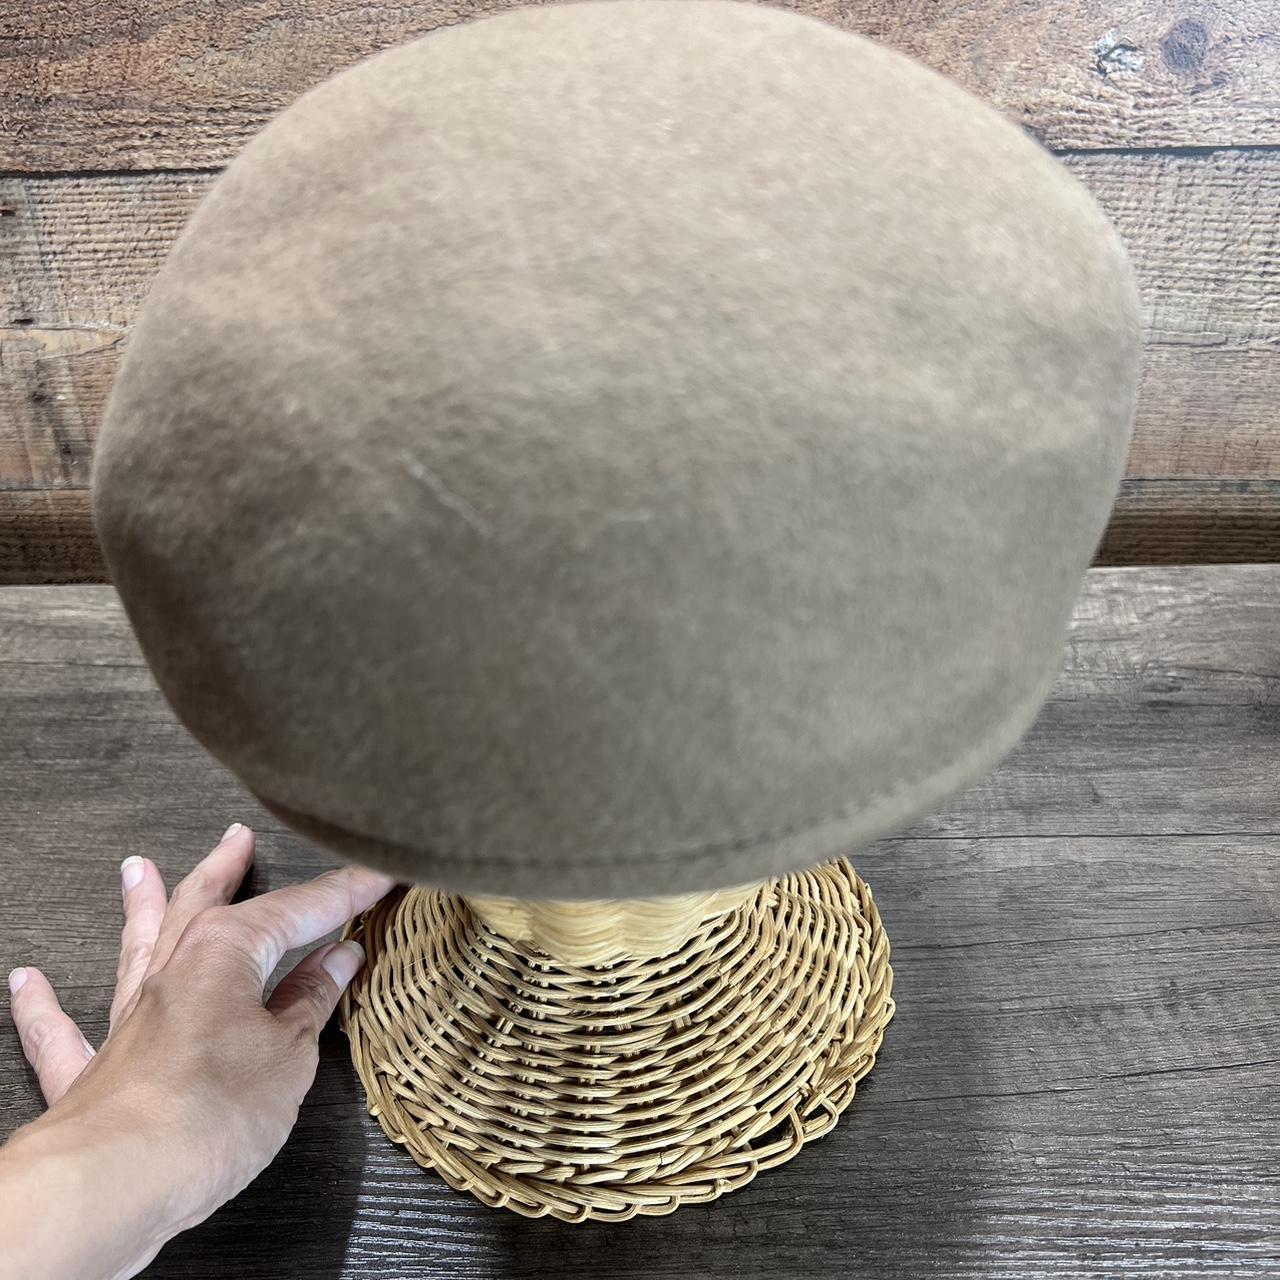 Country Gentleman Men's Tan Hat (4)